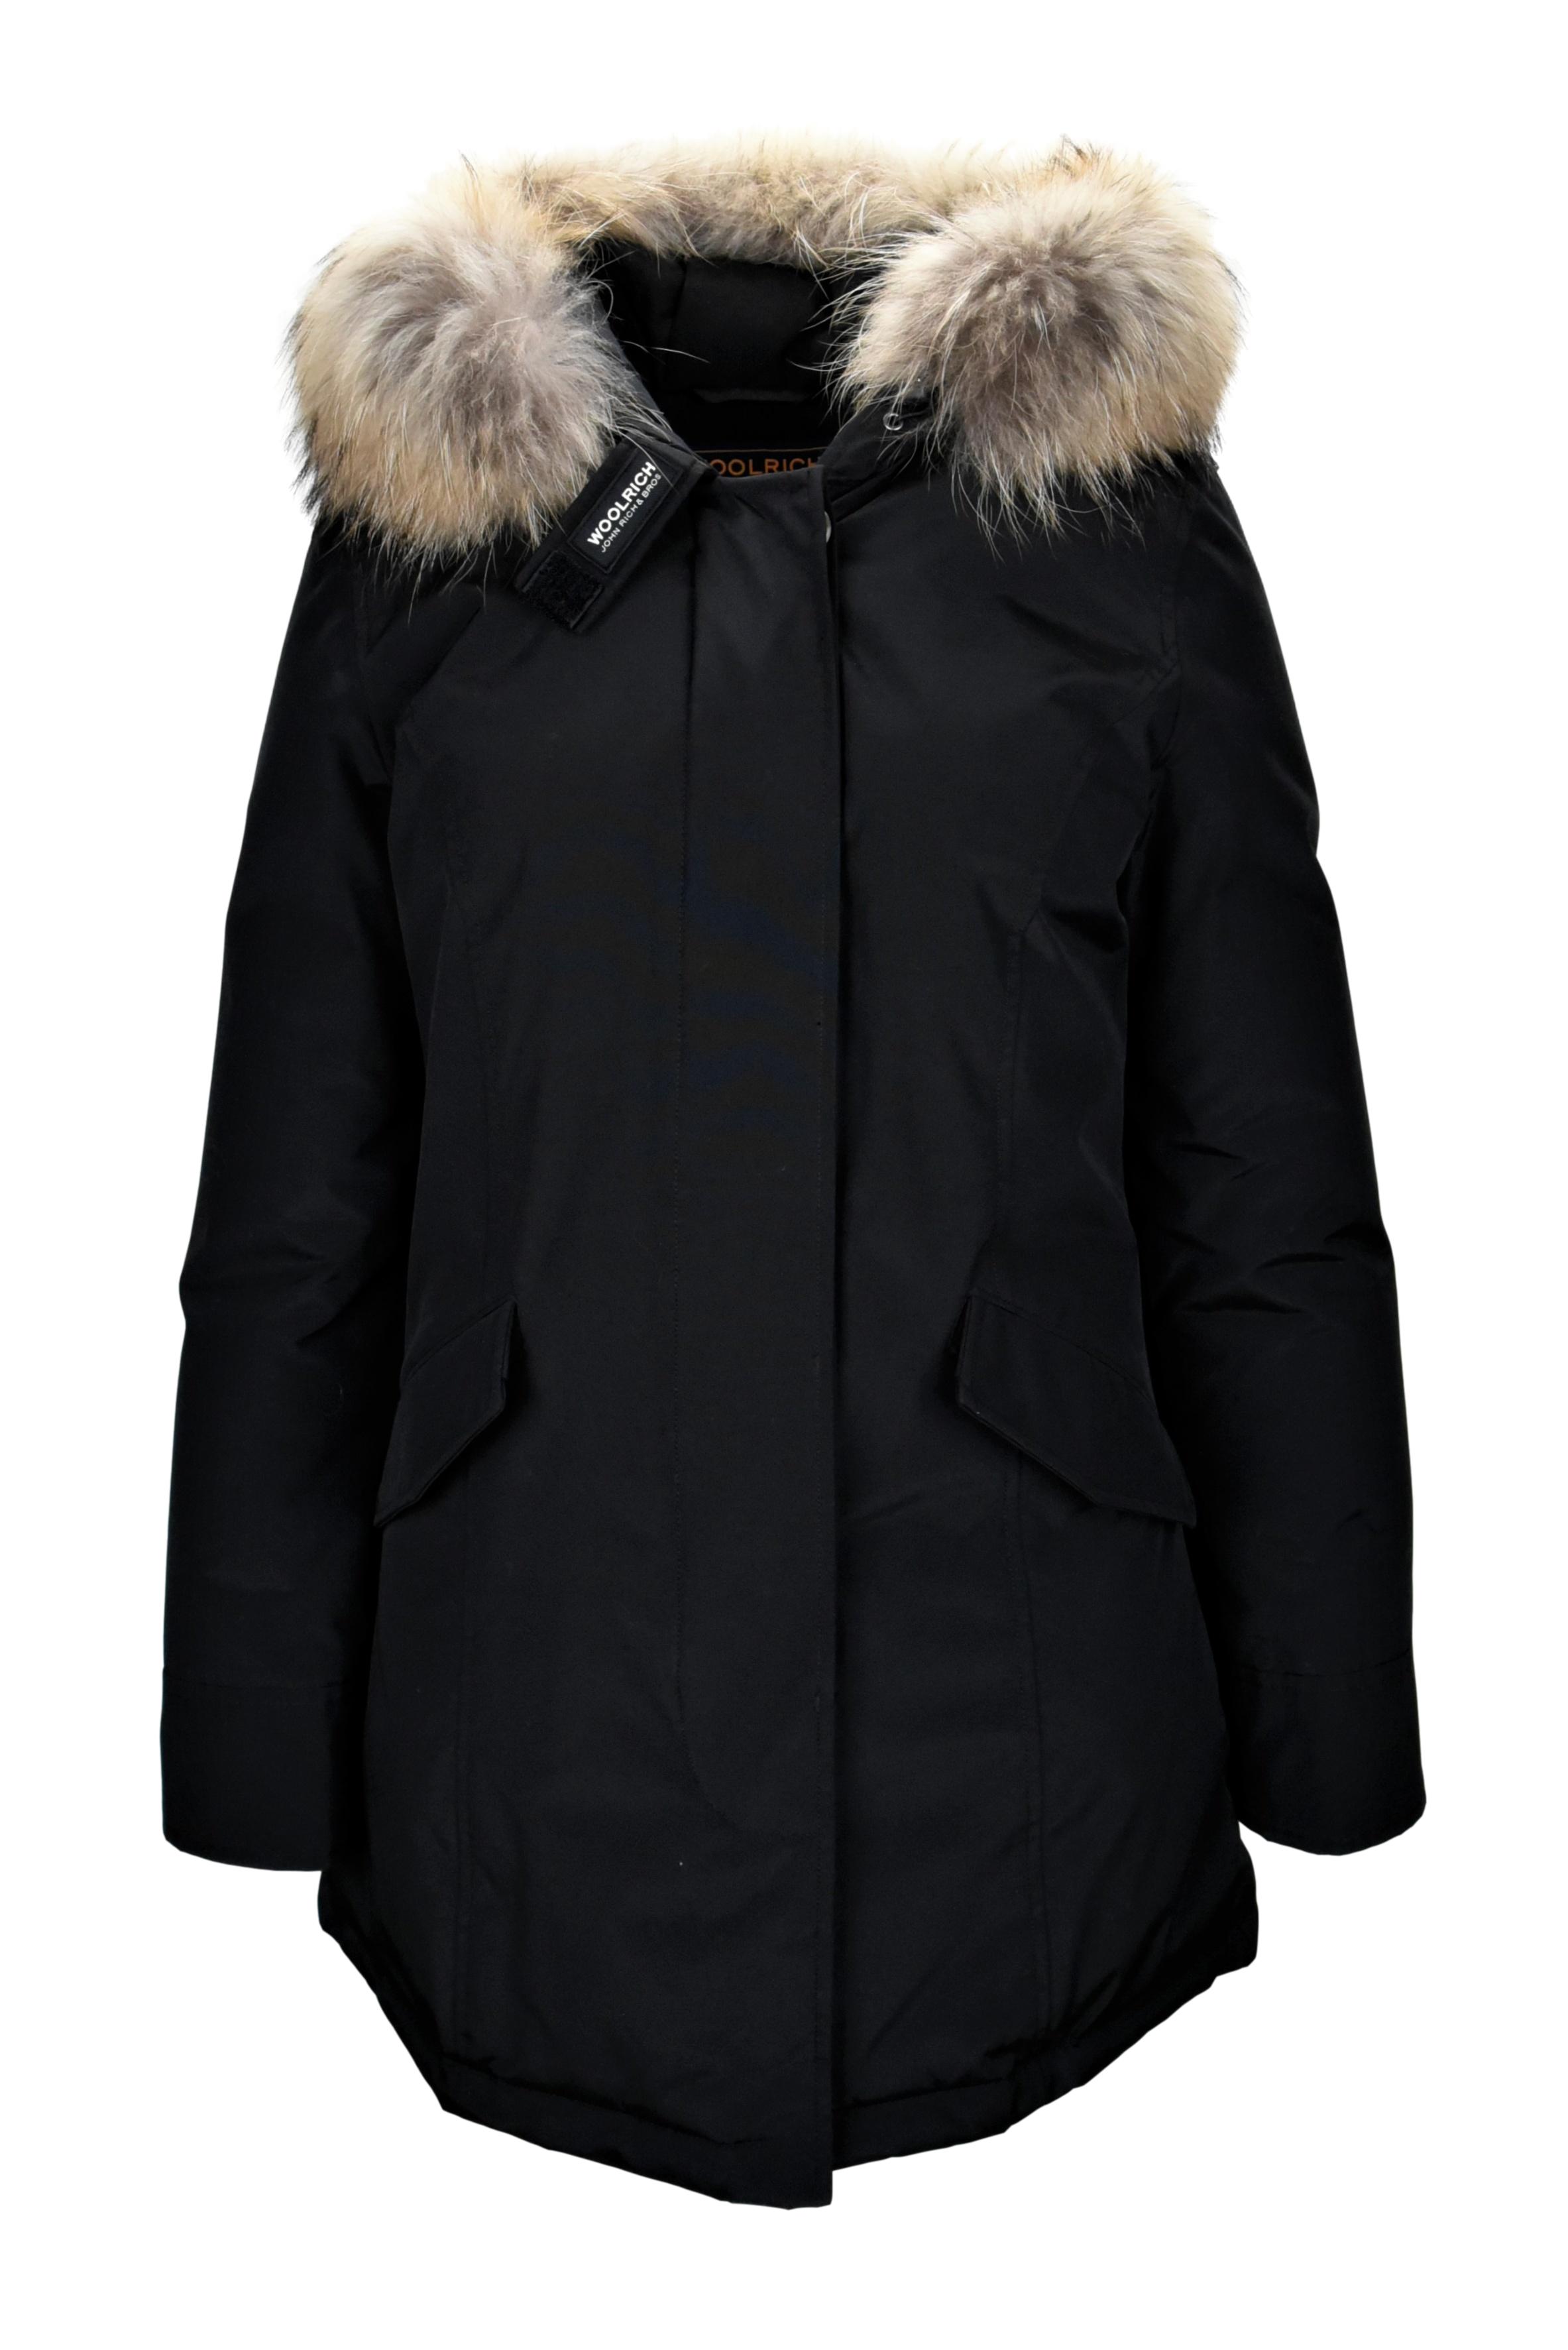 WOOLRICH Luxury Arctic Parka Raccoon Women's Jacket W1.AP40 | eBay